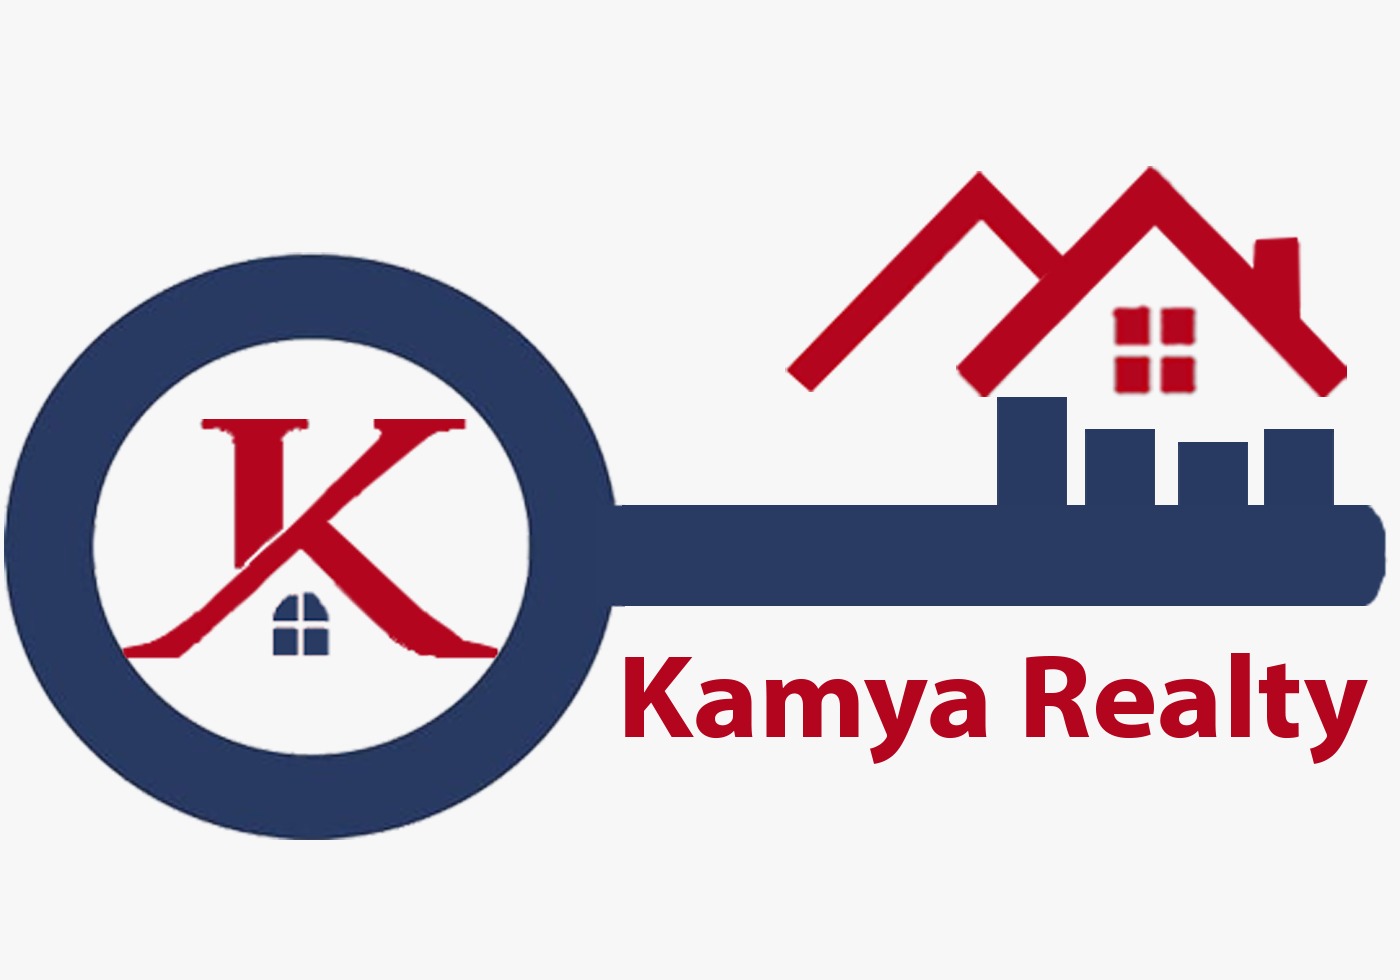 Kamya Realty business details in Gurugram 122018